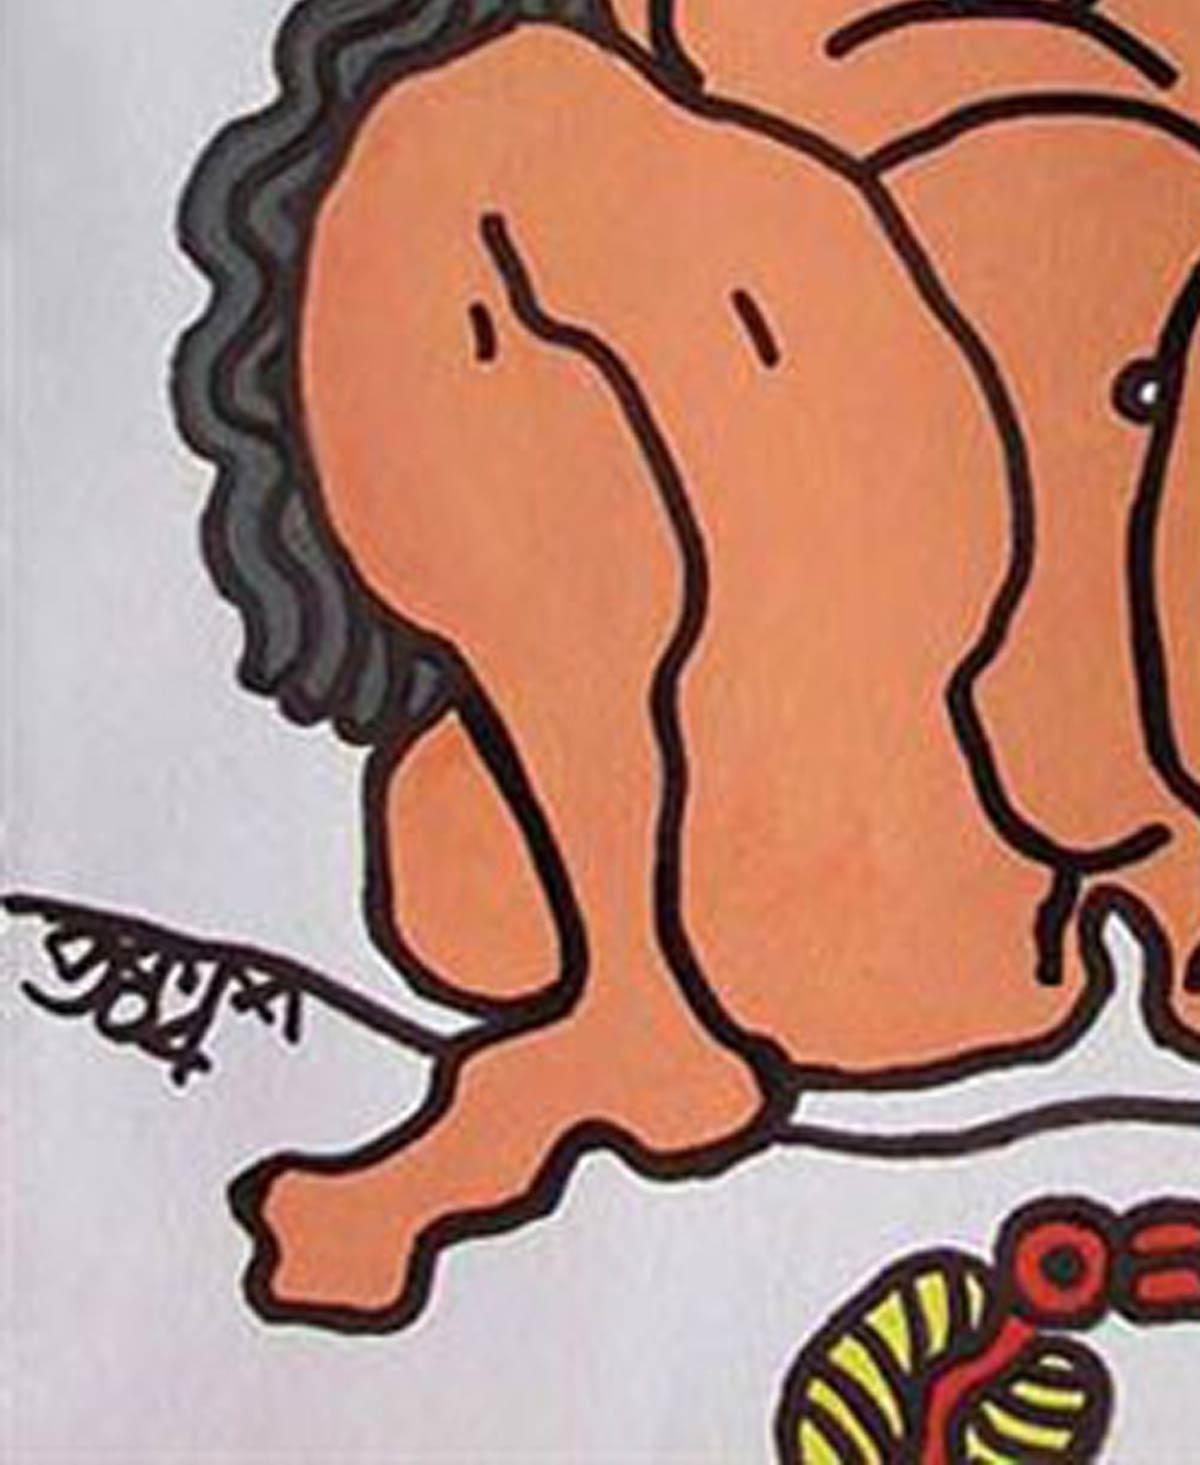 Grandes femmes nues aux yeux larges, cheveux longs, oiseau rouge, jaune, supports mixtes « en stock » - Moderne Mixed Media Art par Prokash Karmakar